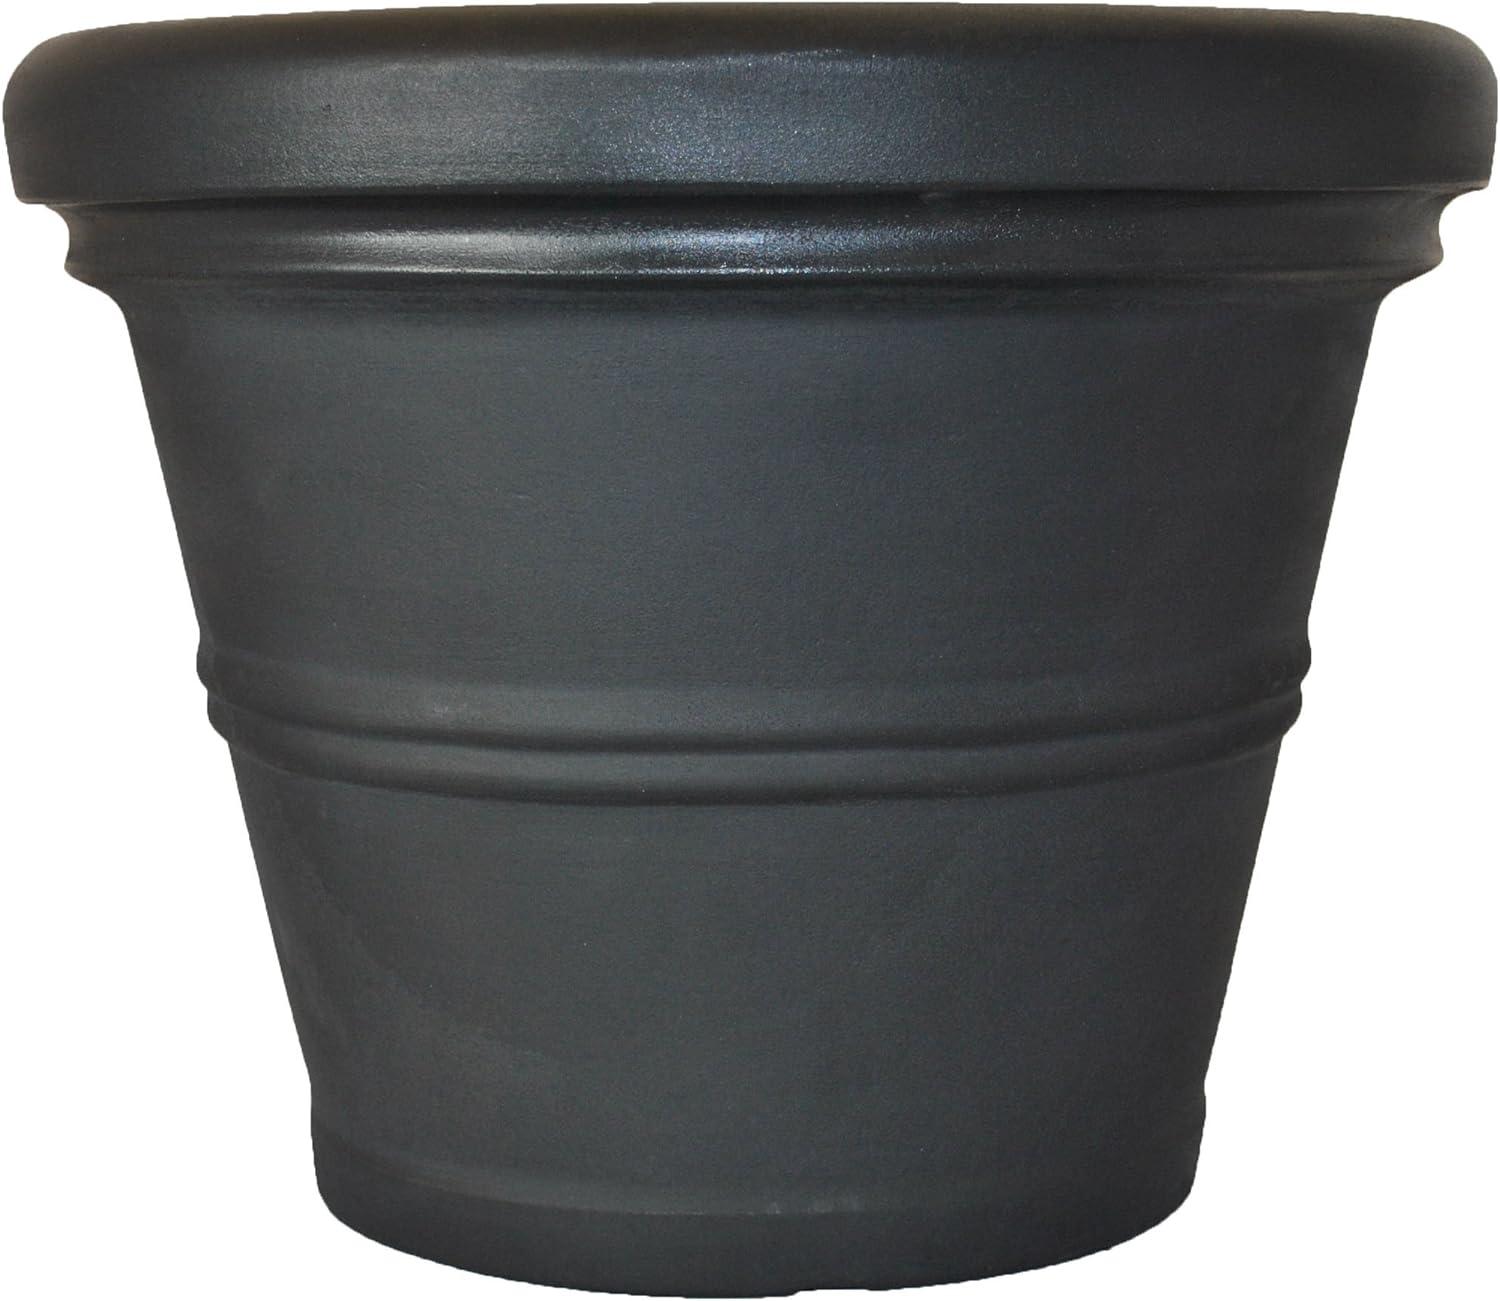 Classic 20" Rolled Rim Black Garden Planter for Indoor & Outdoor